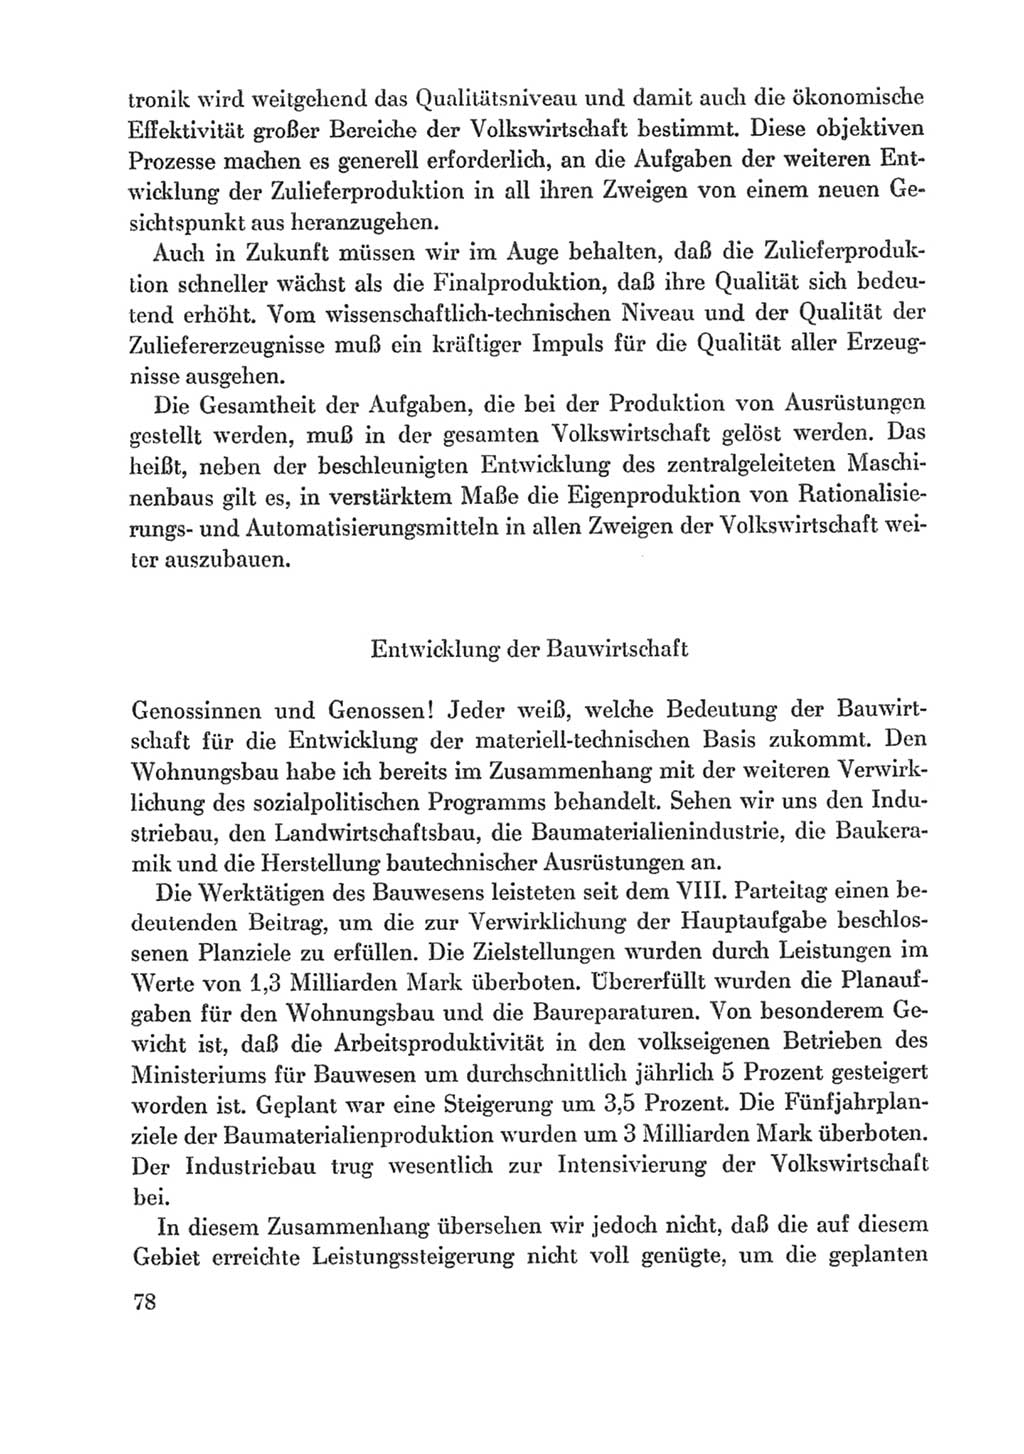 Protokoll der Verhandlungen des Ⅸ. Parteitages der Sozialistischen Einheitspartei Deutschlands (SED) [Deutsche Demokratische Republik (DDR)] 1976, Band 1, Seite 78 (Prot. Verh. Ⅸ. PT SED DDR 1976, Bd. 1, S. 78)